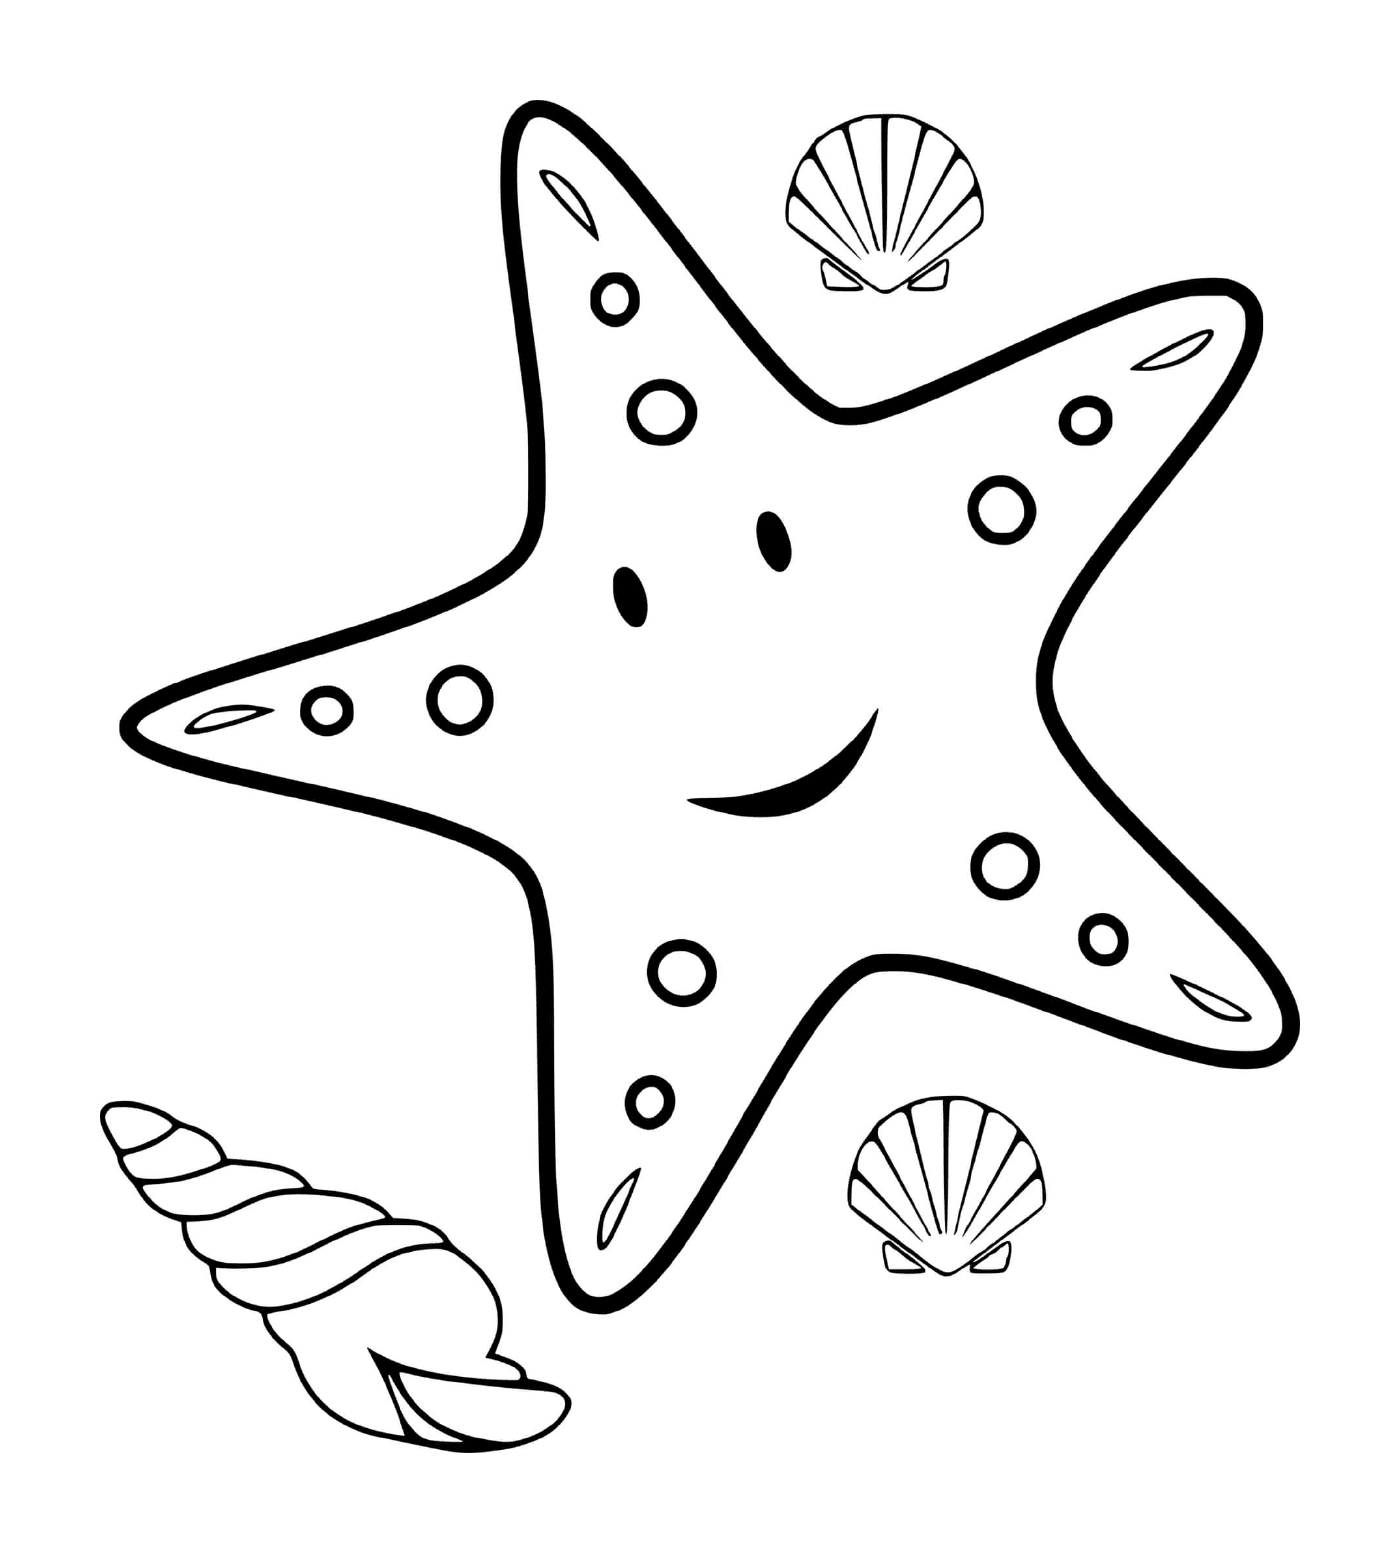   Étoile de mer colorée 